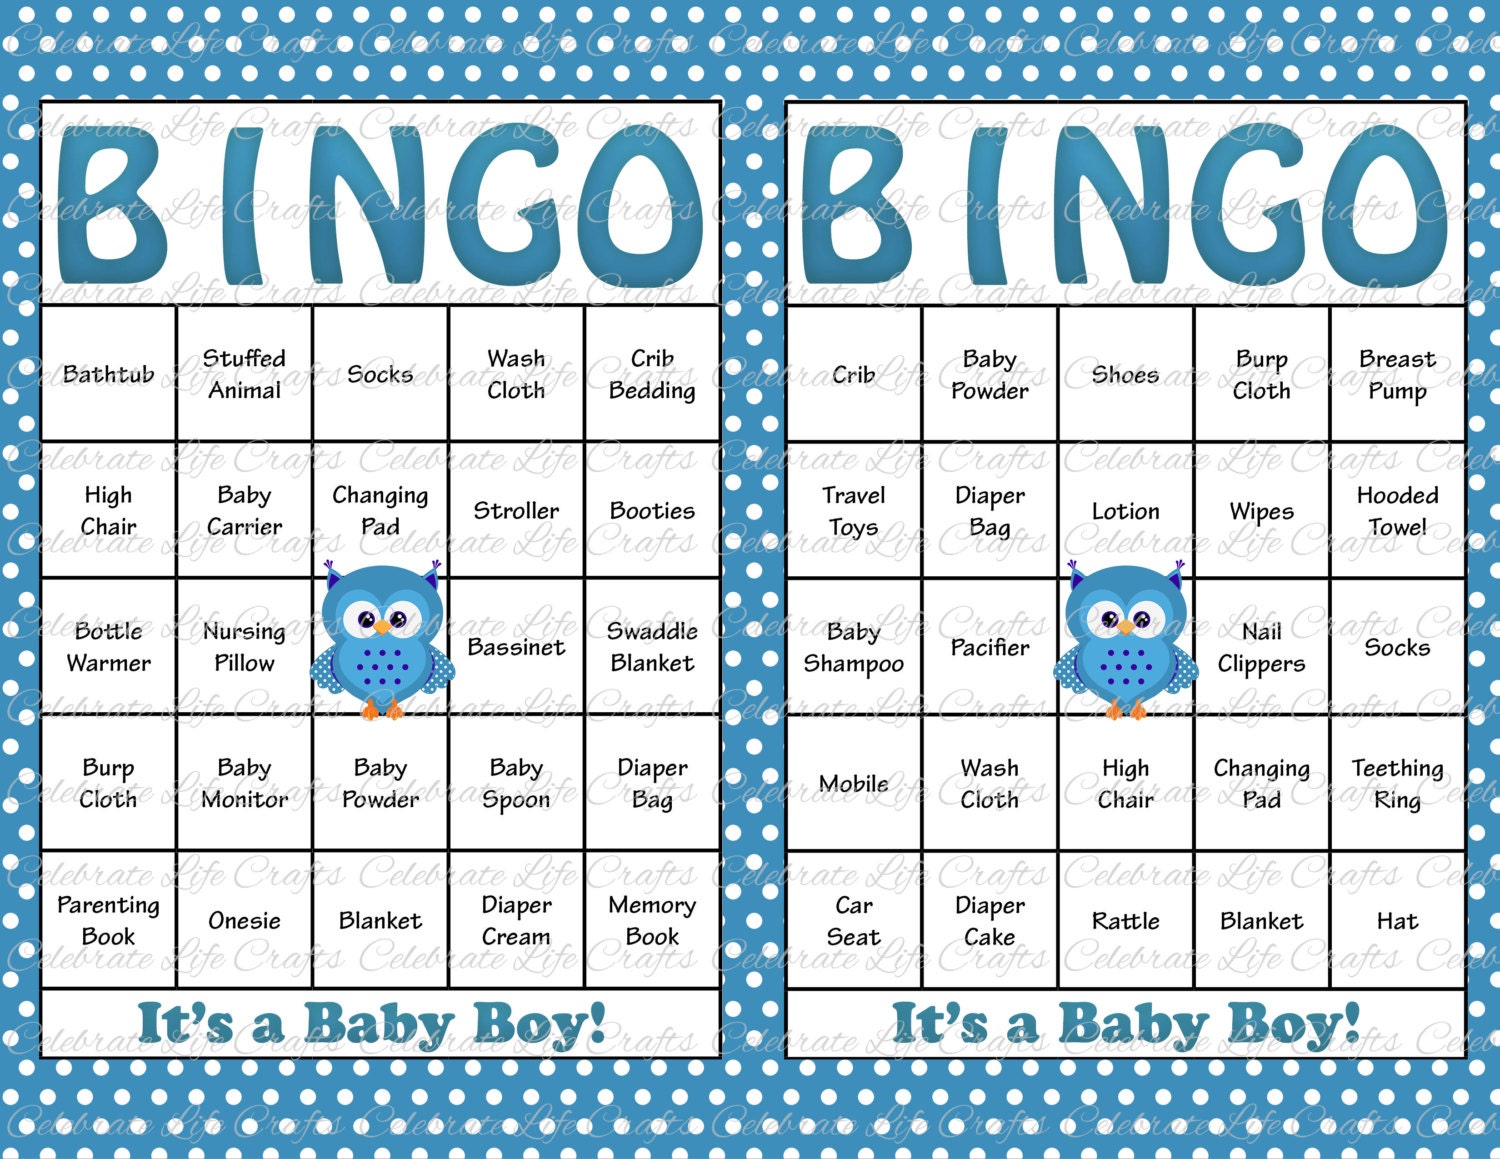 Baby Bingo Free Printable - Printable World Holiday